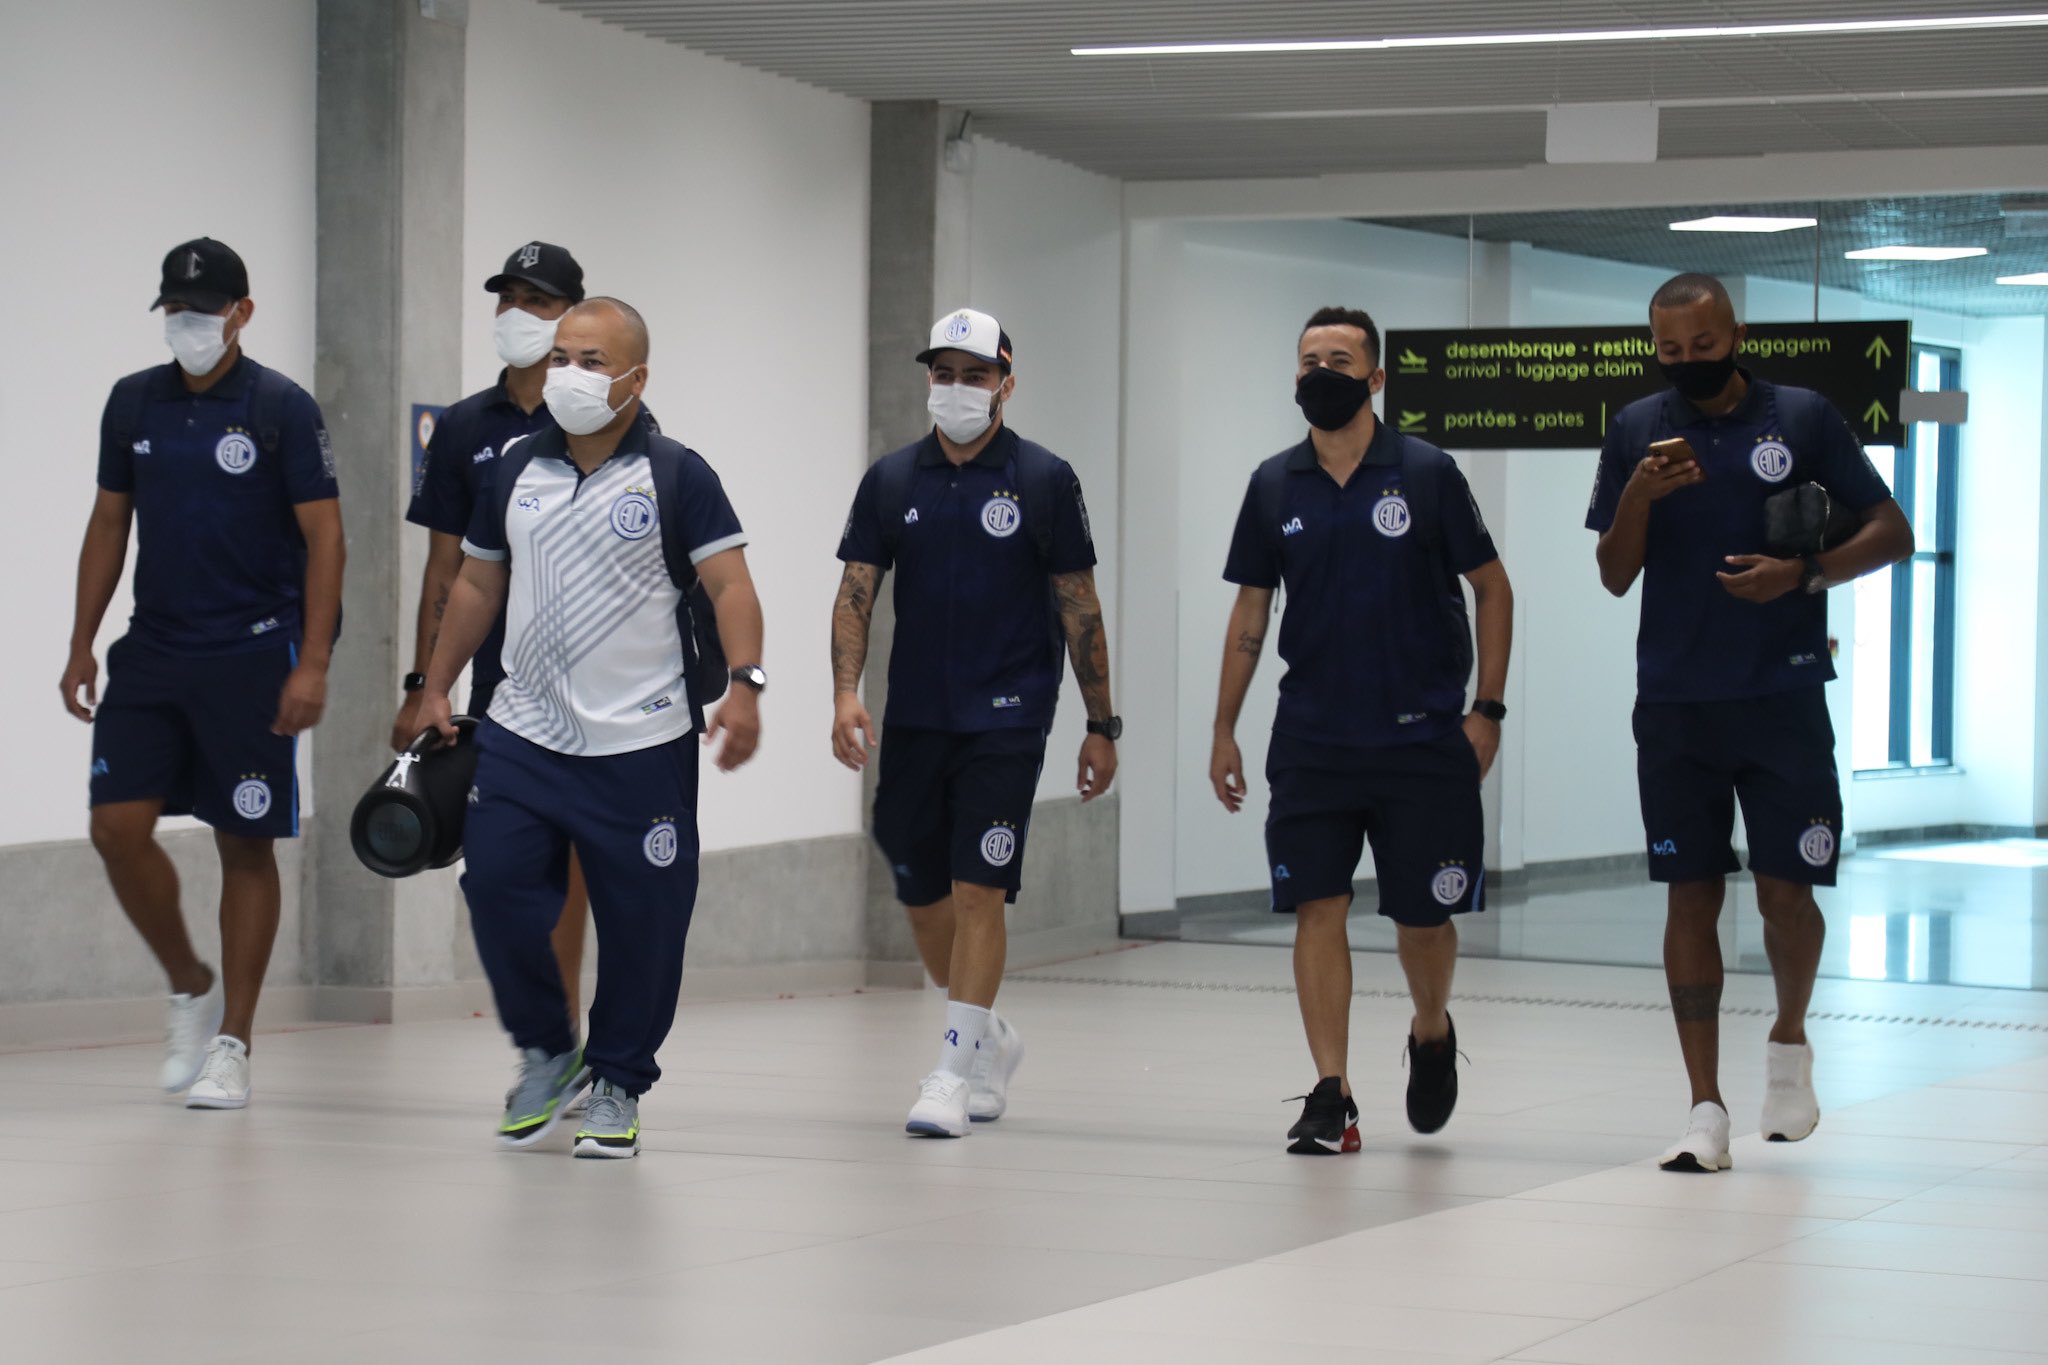 A equipe do confiança desembarcou no Rio de Janeiro nesta segunda-feira para o duelo diante do Botafogo. Foto: Confiança/Twitter